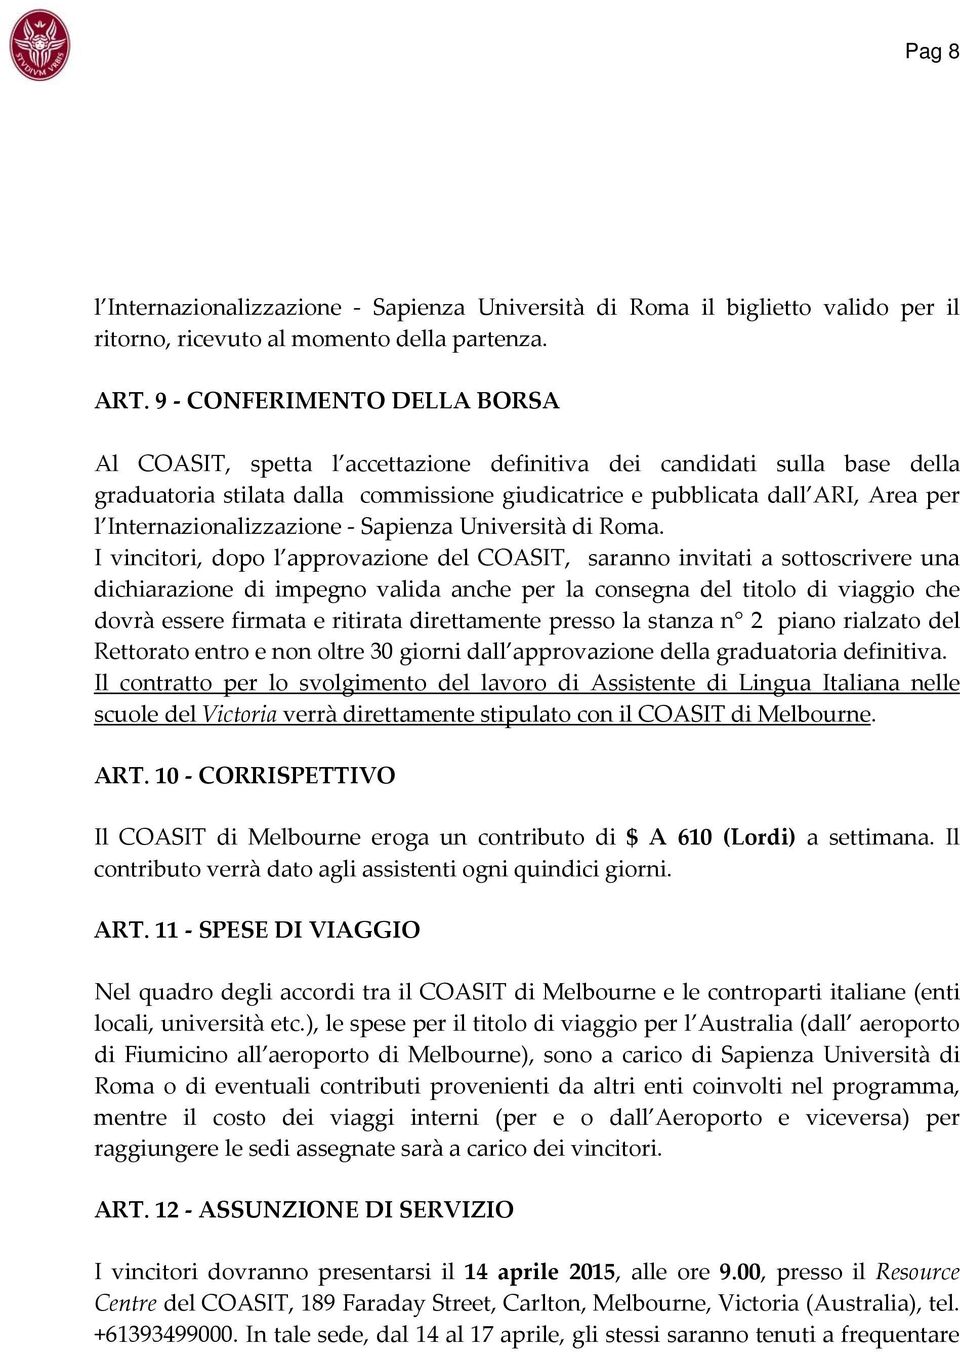 Internazionalizzazione Sapienza Università di Roma.